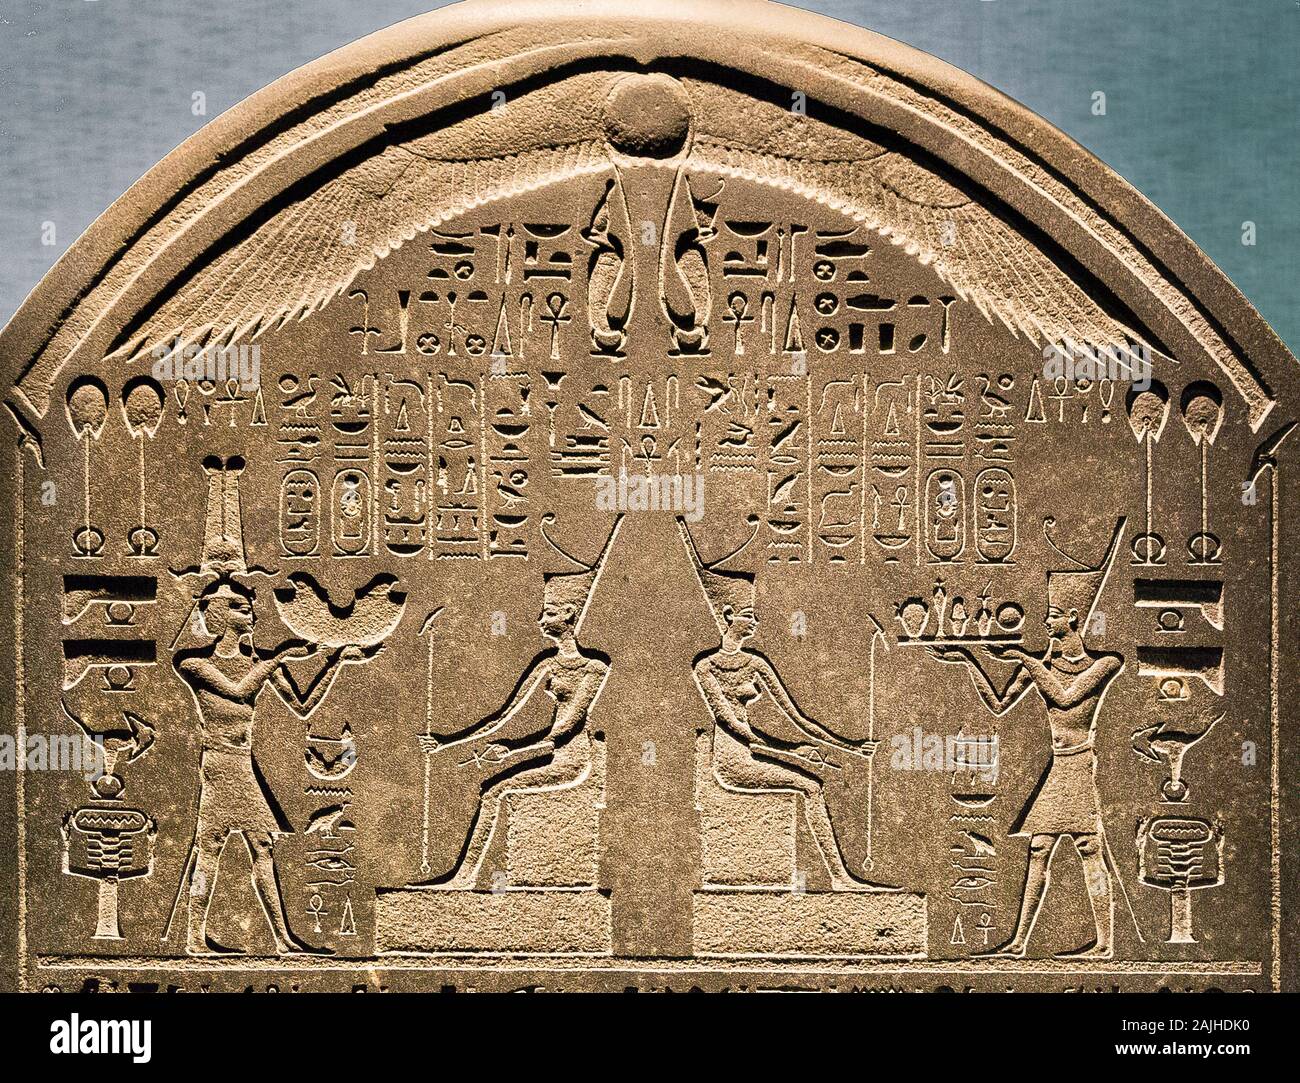 Visita di apertura della mostra "Osiris, Egypt's Sunken Mysteries". Stela di Thônis-Heraklion, da Nectanebo i, una copia della 'Naucratis stela'. Foto Stock